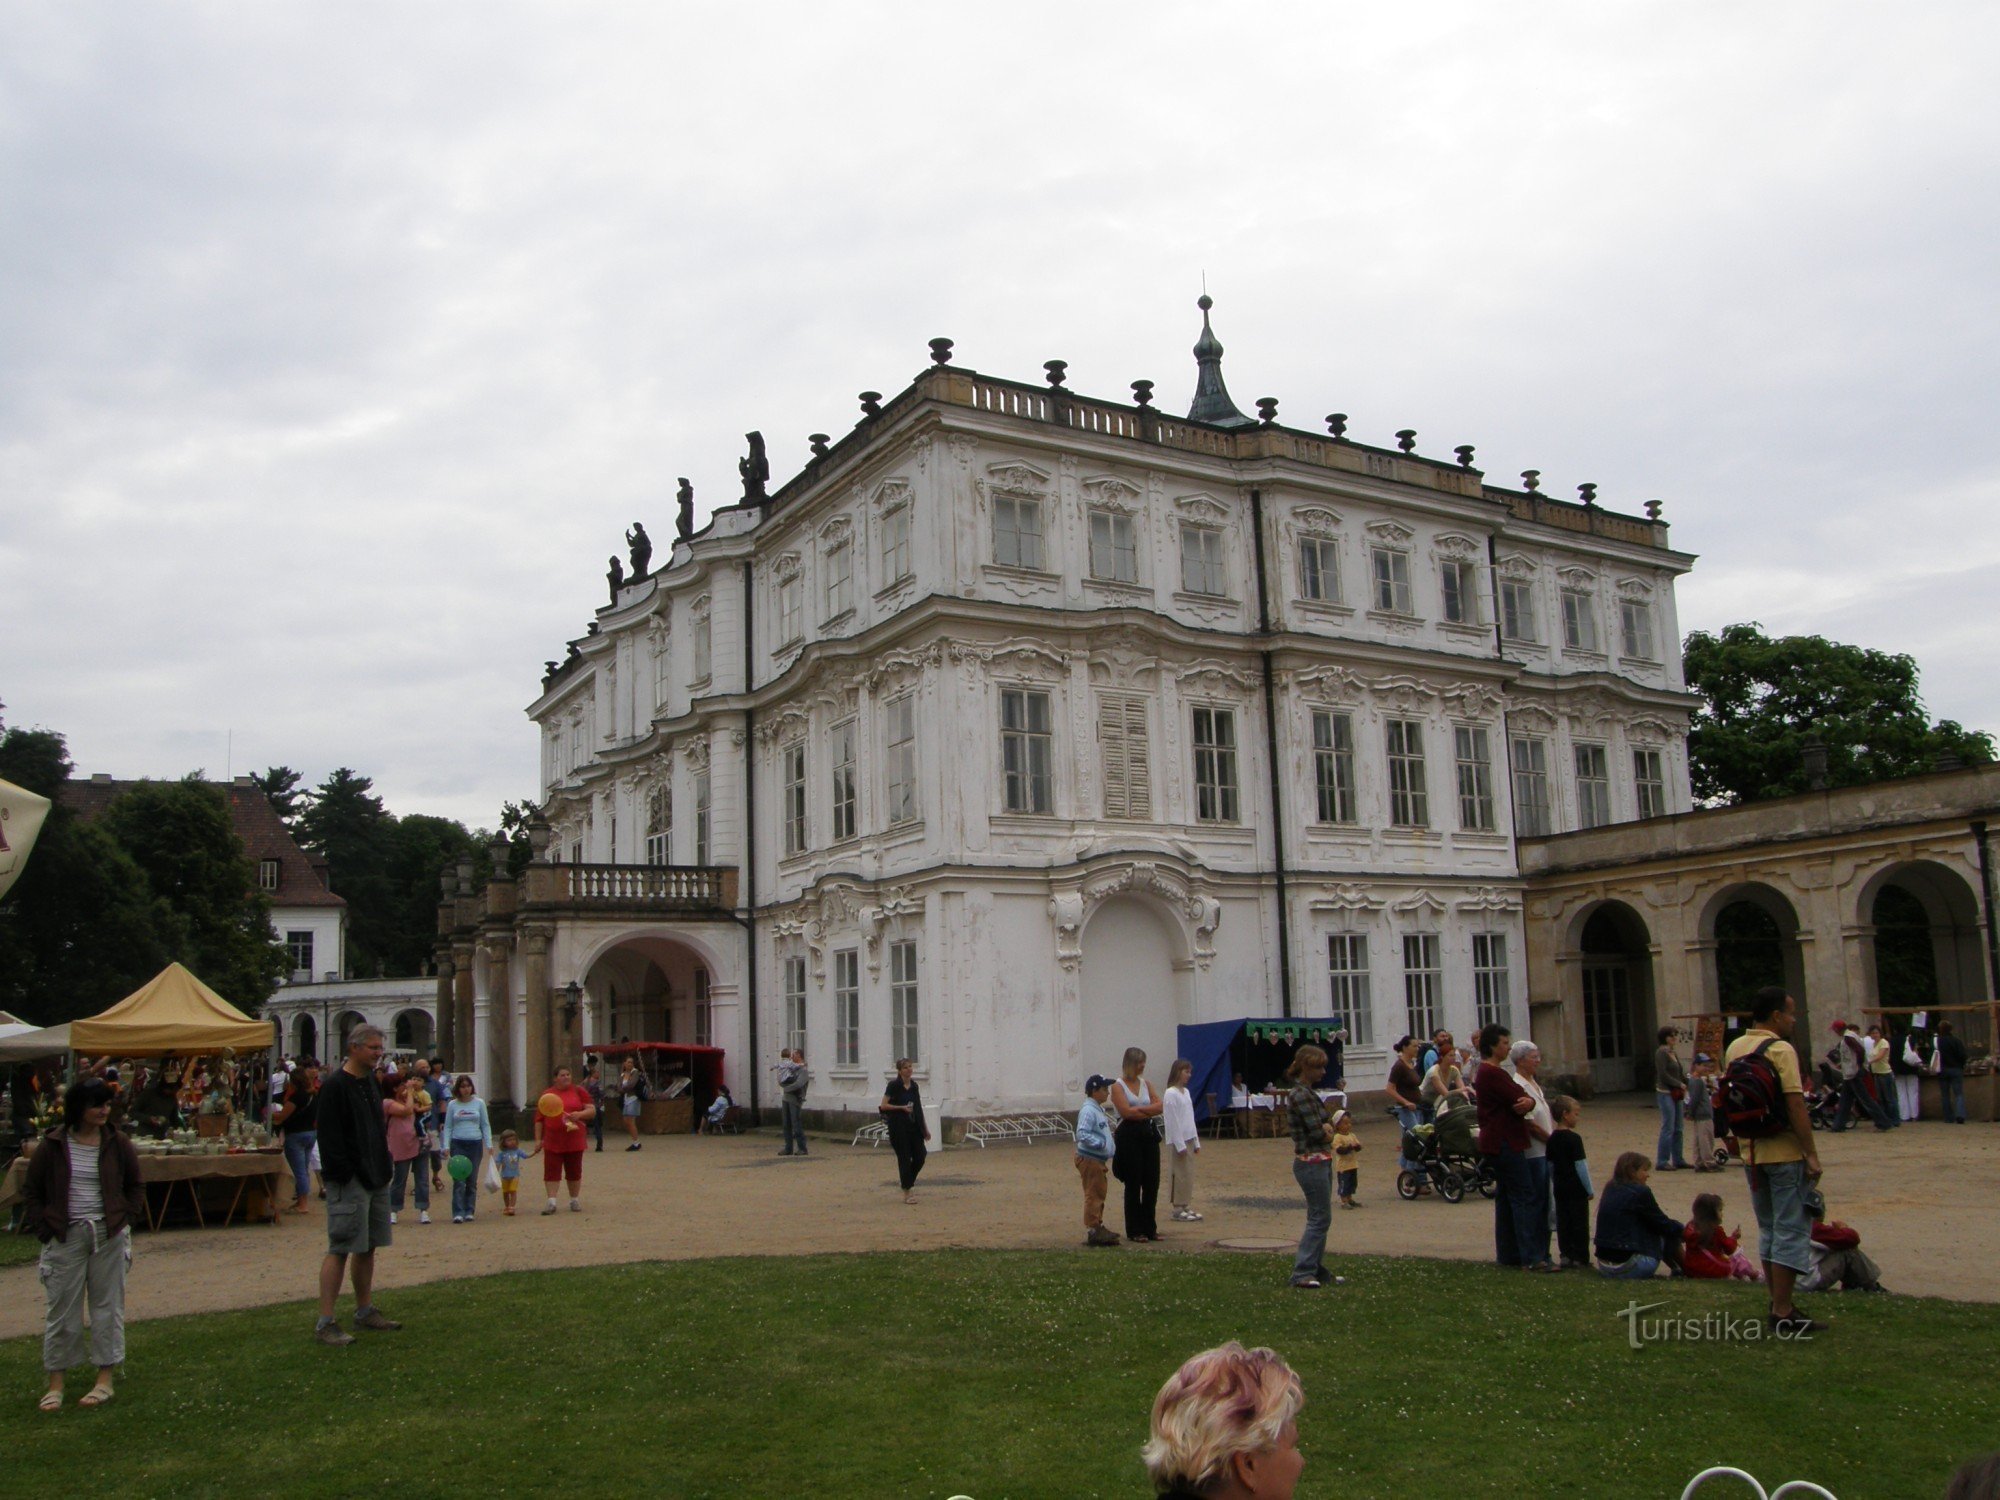 Ploskovice - reședința de vară a împăraților și miniștrilor de afaceri externe